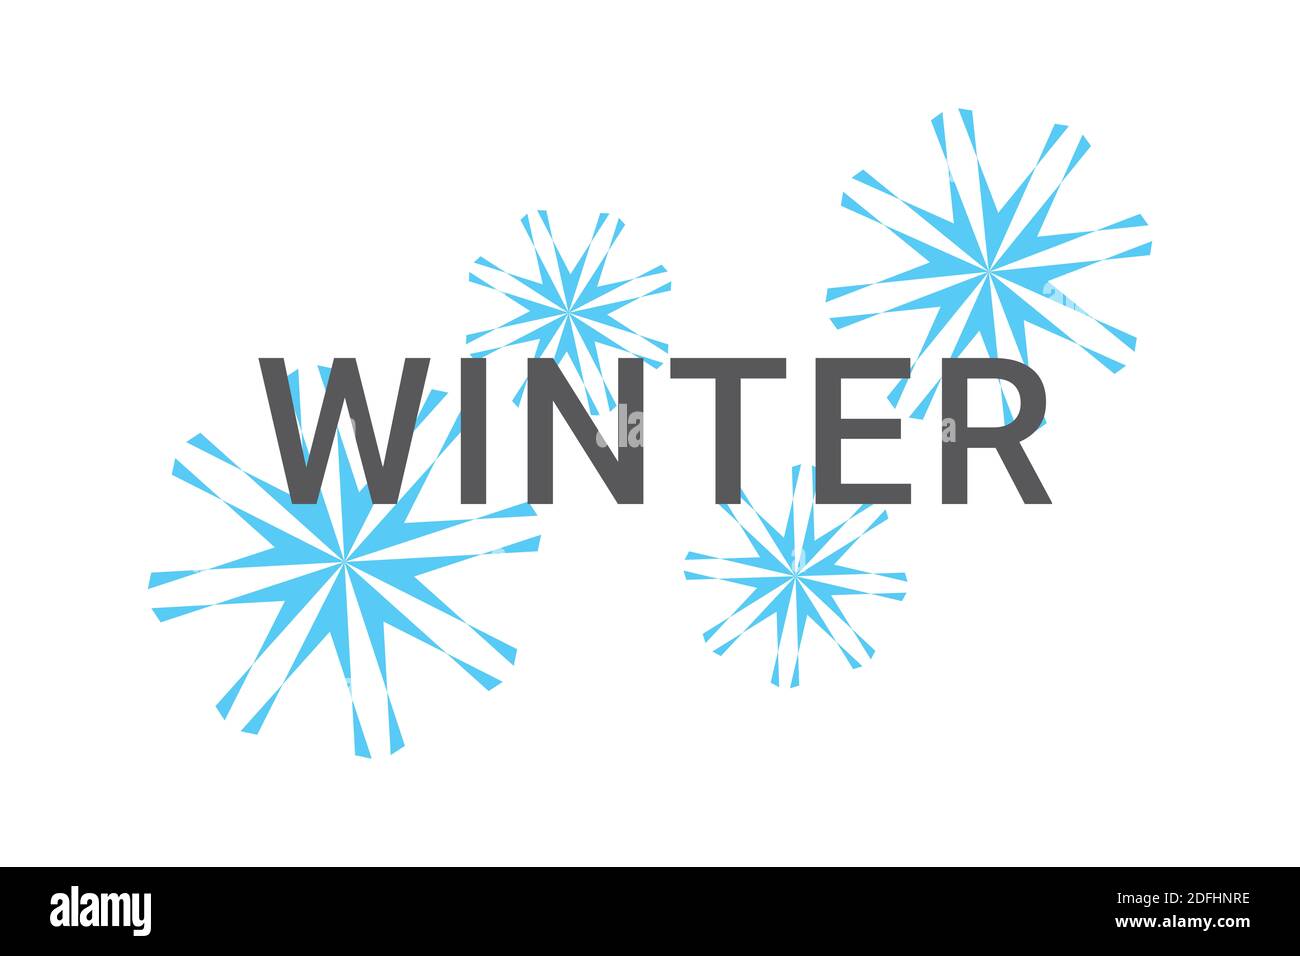 Moderne grafische Gestaltung eines Wortes "Winter" mit geometrischen Formen in Schneeflocken Abstraktion in blau und grau Farben. Urbane Typografie. Stockfoto